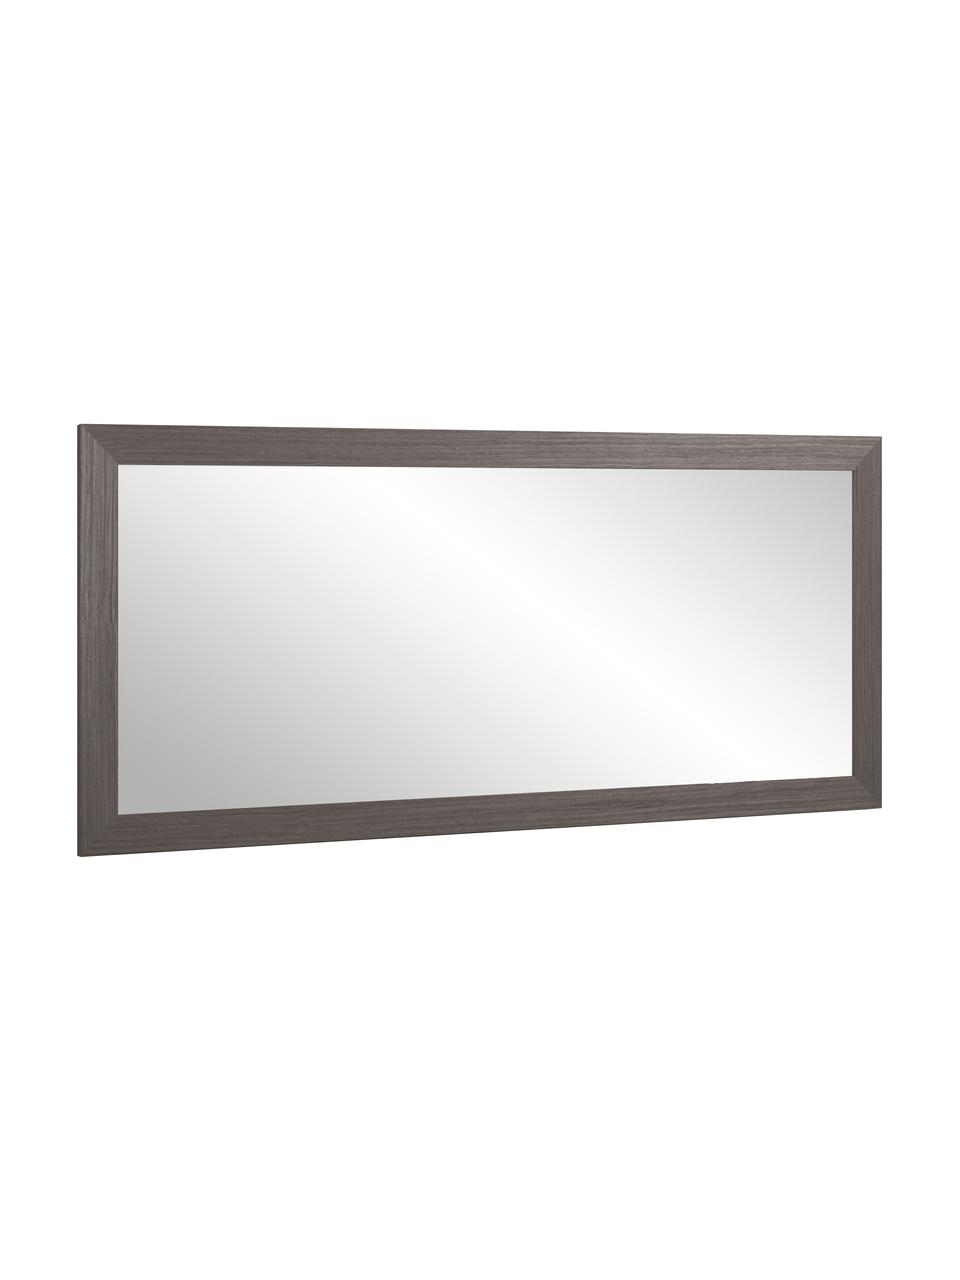 Obdélníkové nástěnné zrcadlo s dřevěným rámem Yvaine, Hnědá, Š 81 cm, V 181 cm